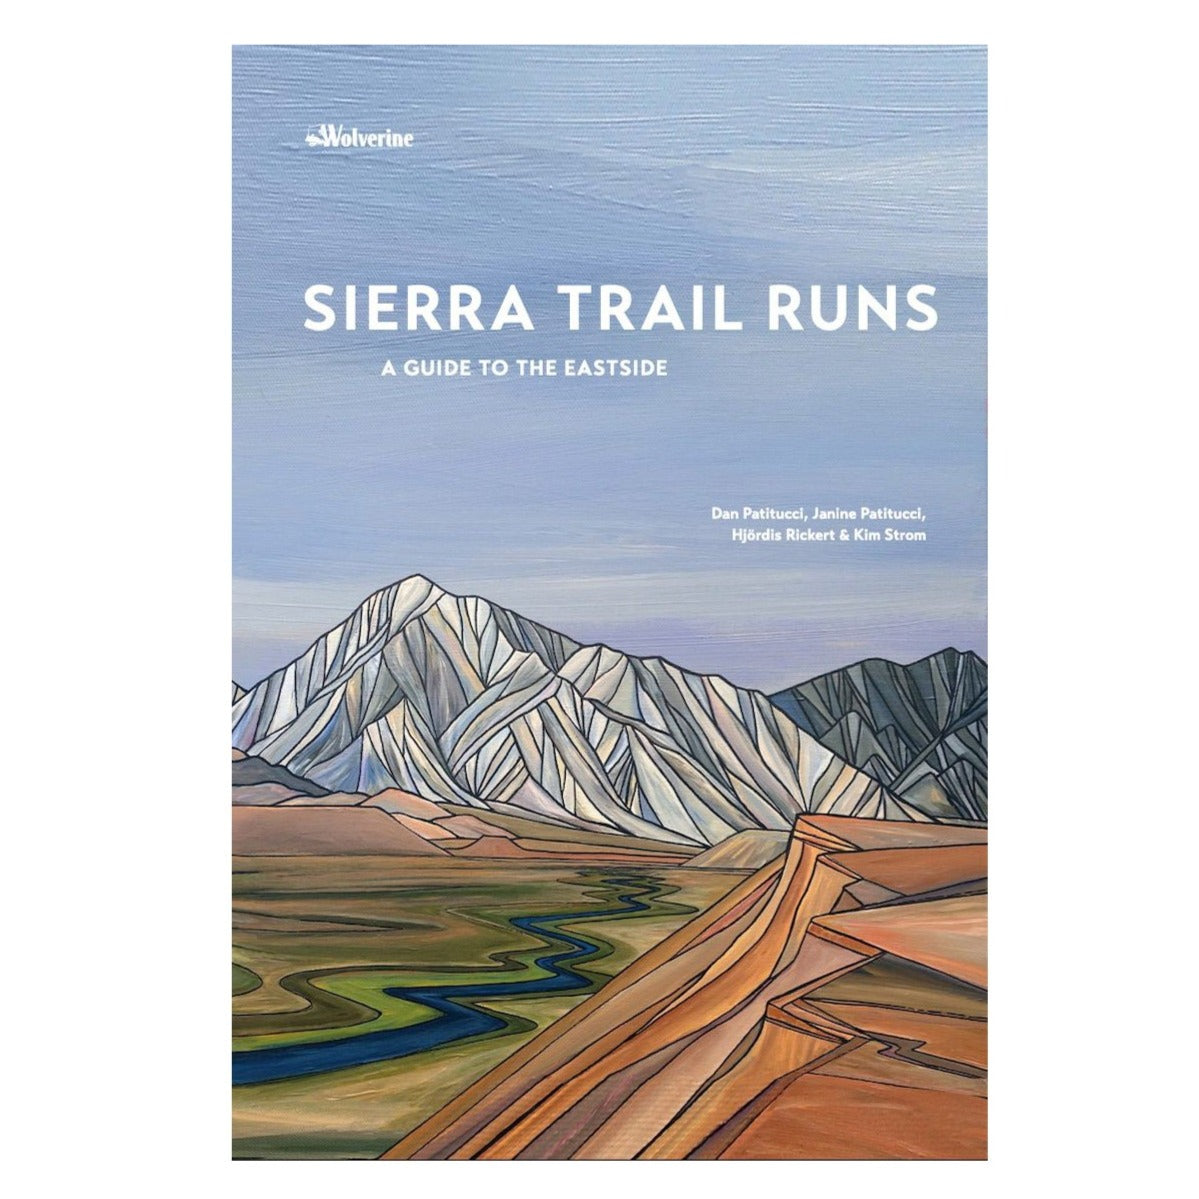 Sierra Trail Runs Guide Book